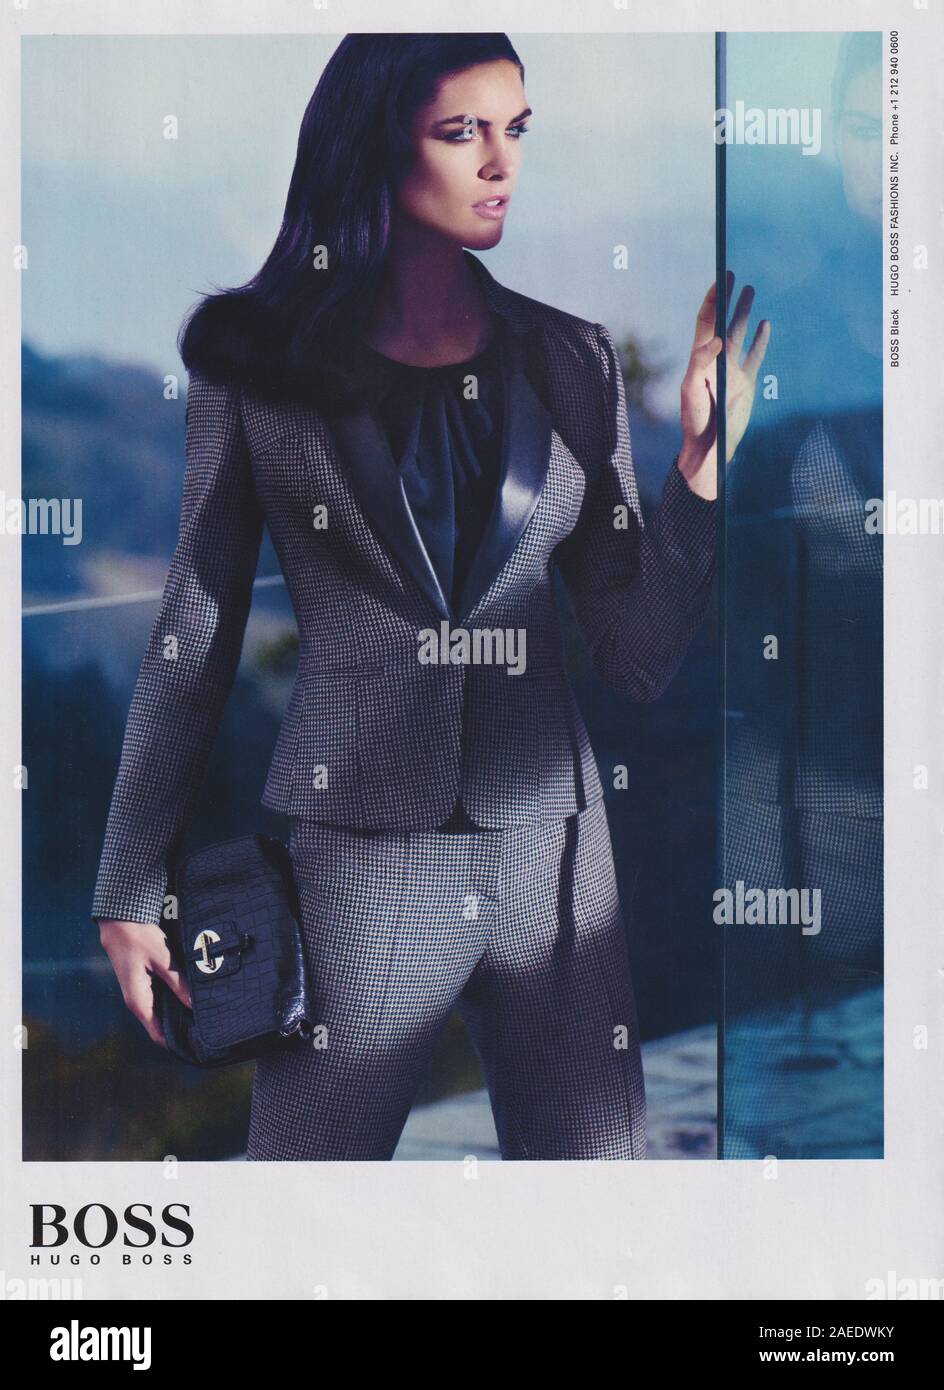 Plakat werbung Hugo Boss Fashion House mit Hilary Rhoda in Papier Magazin  von 2012 Jahr, Werbung, kreative Hugo Boss Werbung ab 2010 s  Stockfotografie - Alamy